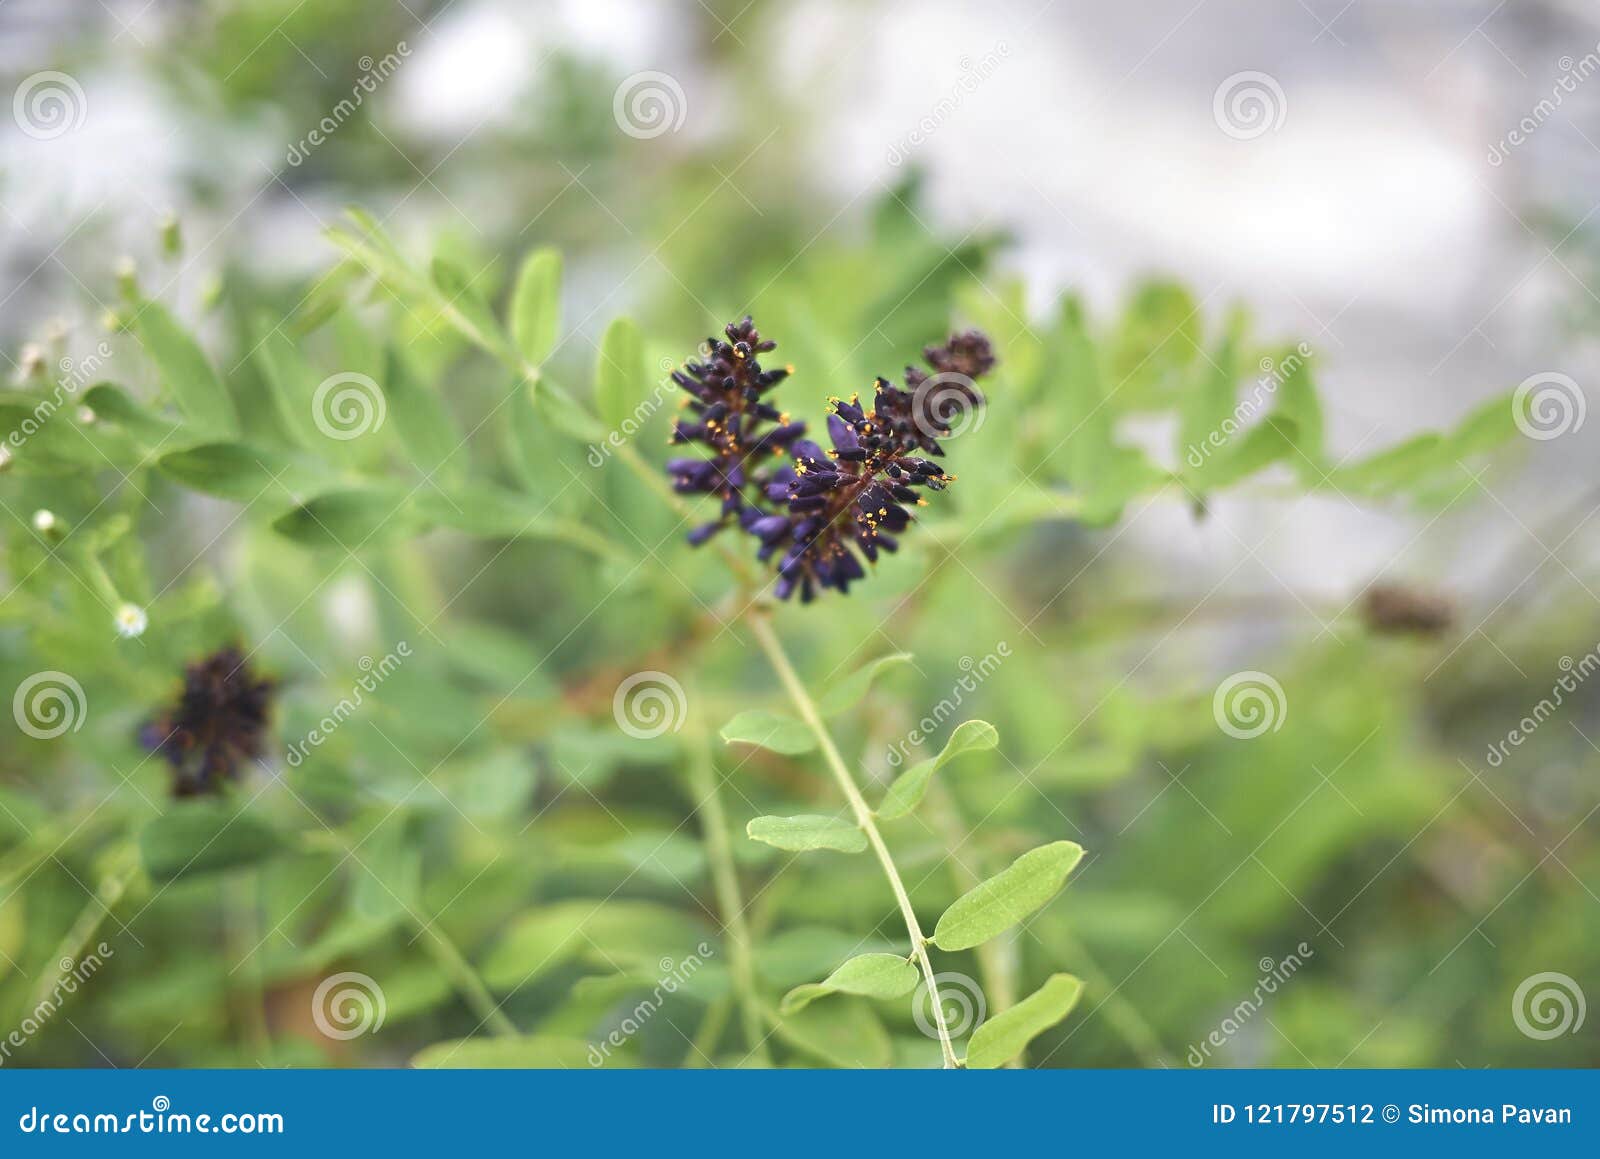 close up amorpha fruticosa plant